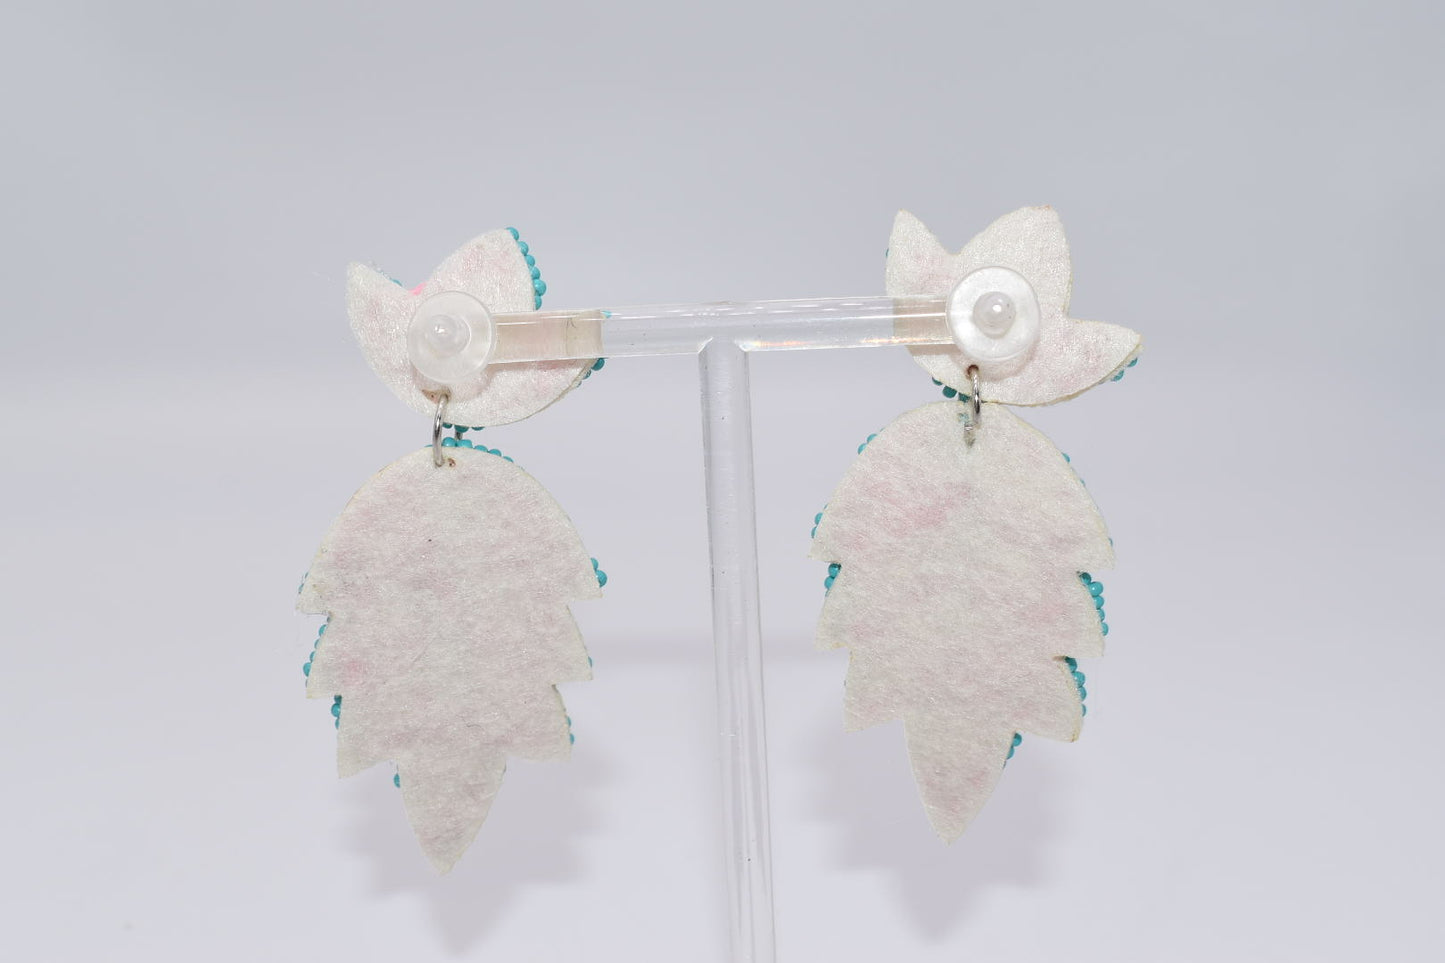 Statement Earrings: Pink & Blue Tropical Drop Earrings